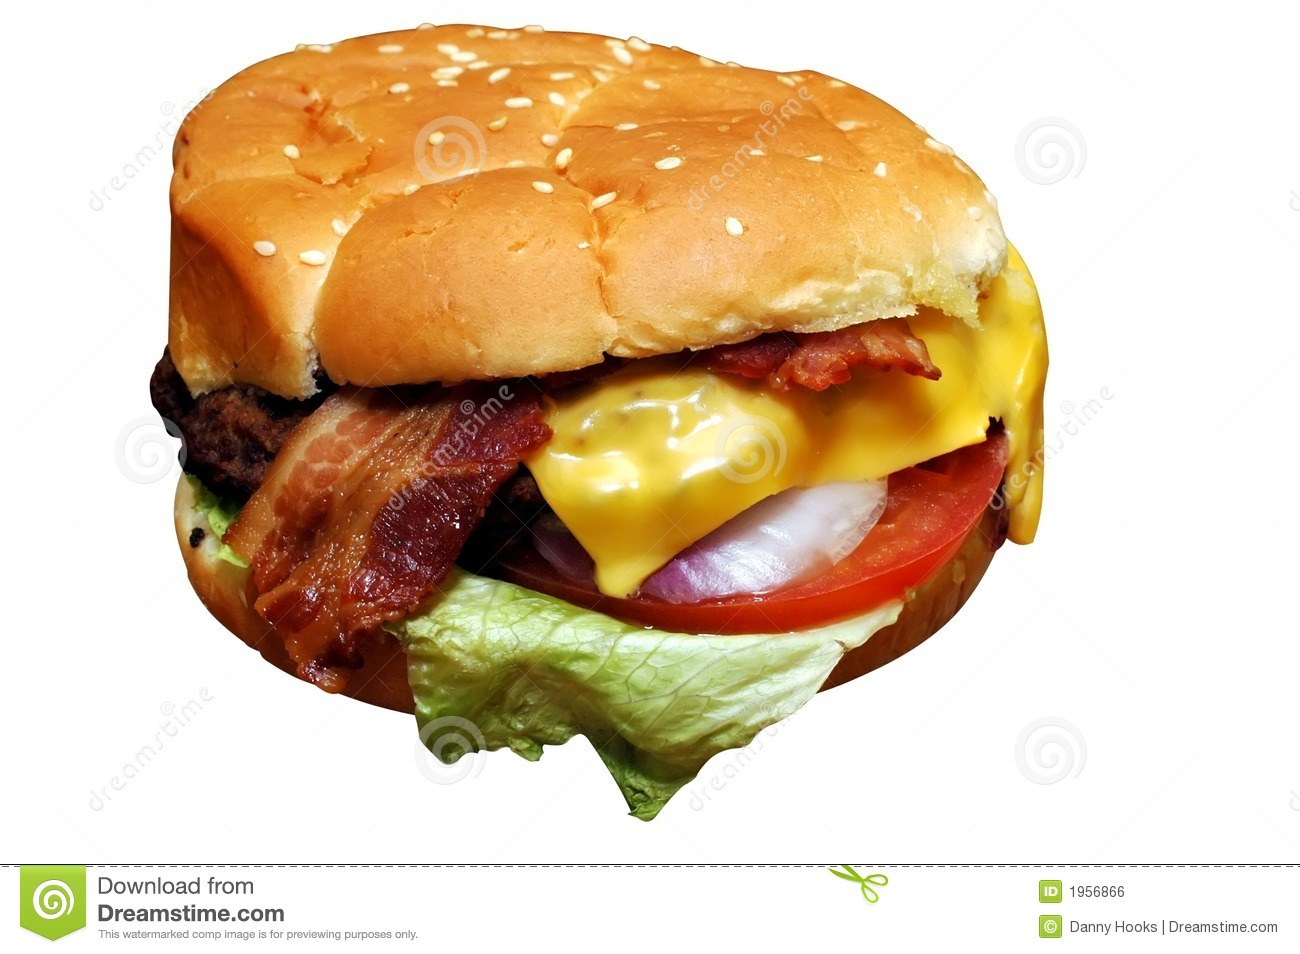 Bacon Cheeseburger Royalty Free Stock Image   Image  1956866